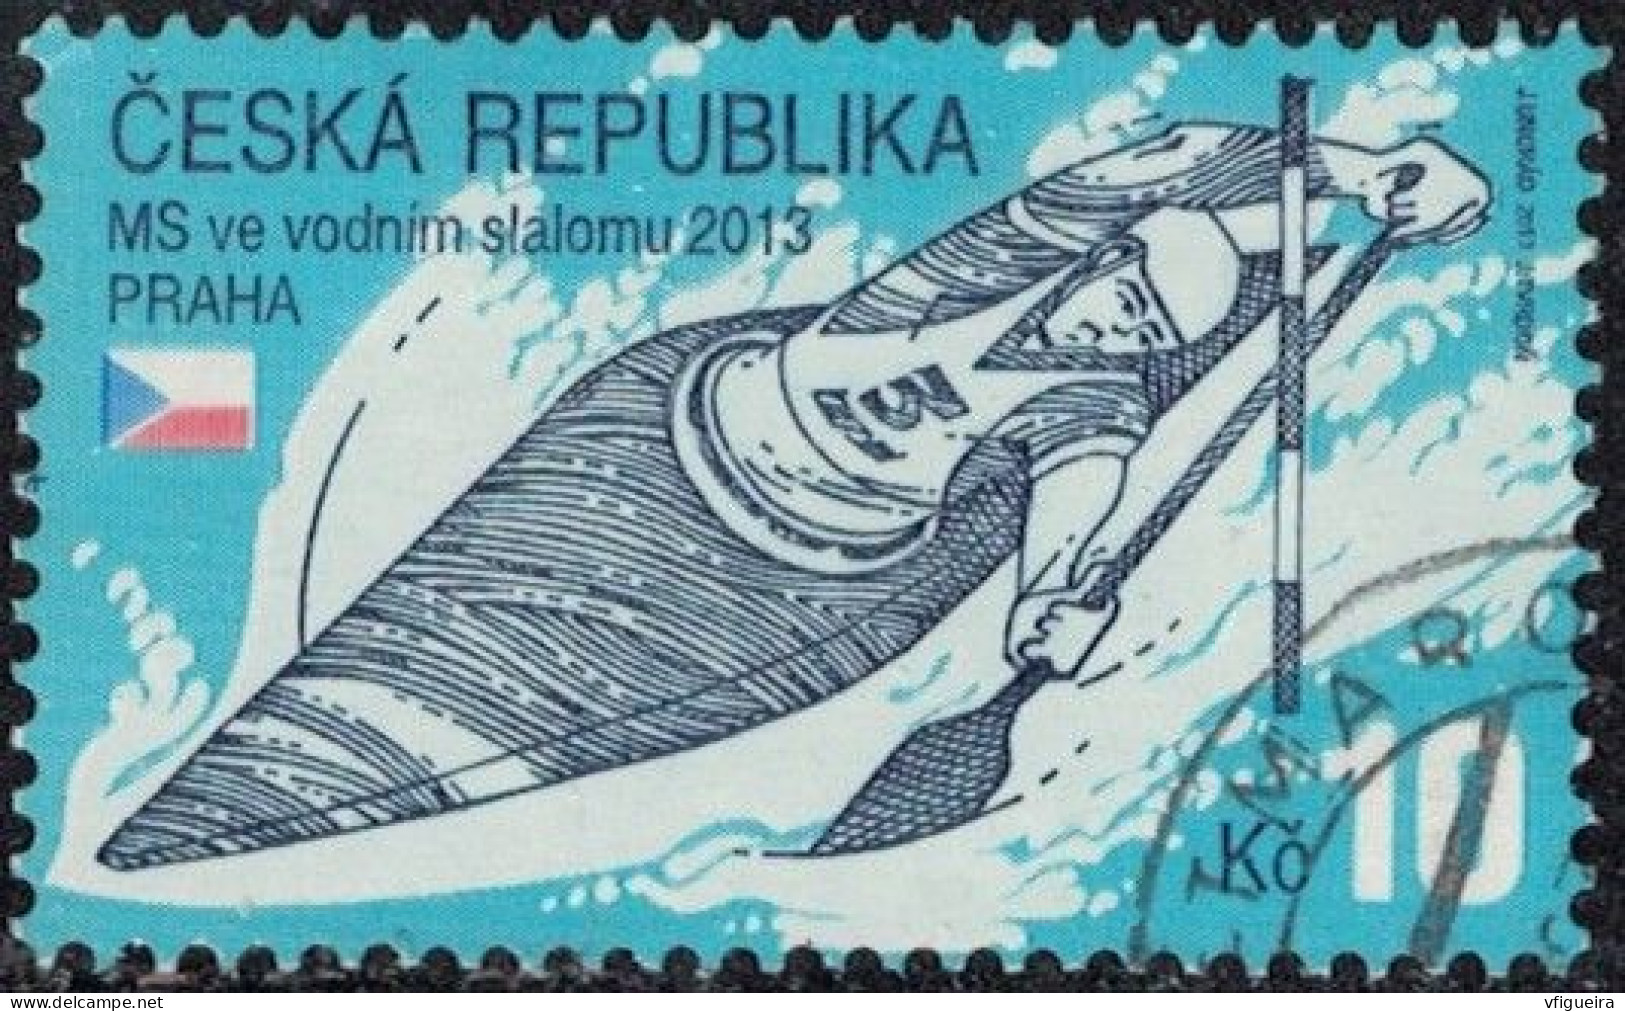 République Tchèque 2013 Oblitéré Used Championnats Du Monde De Slalom De Kayak Y&T CZ 686 SU - Usati